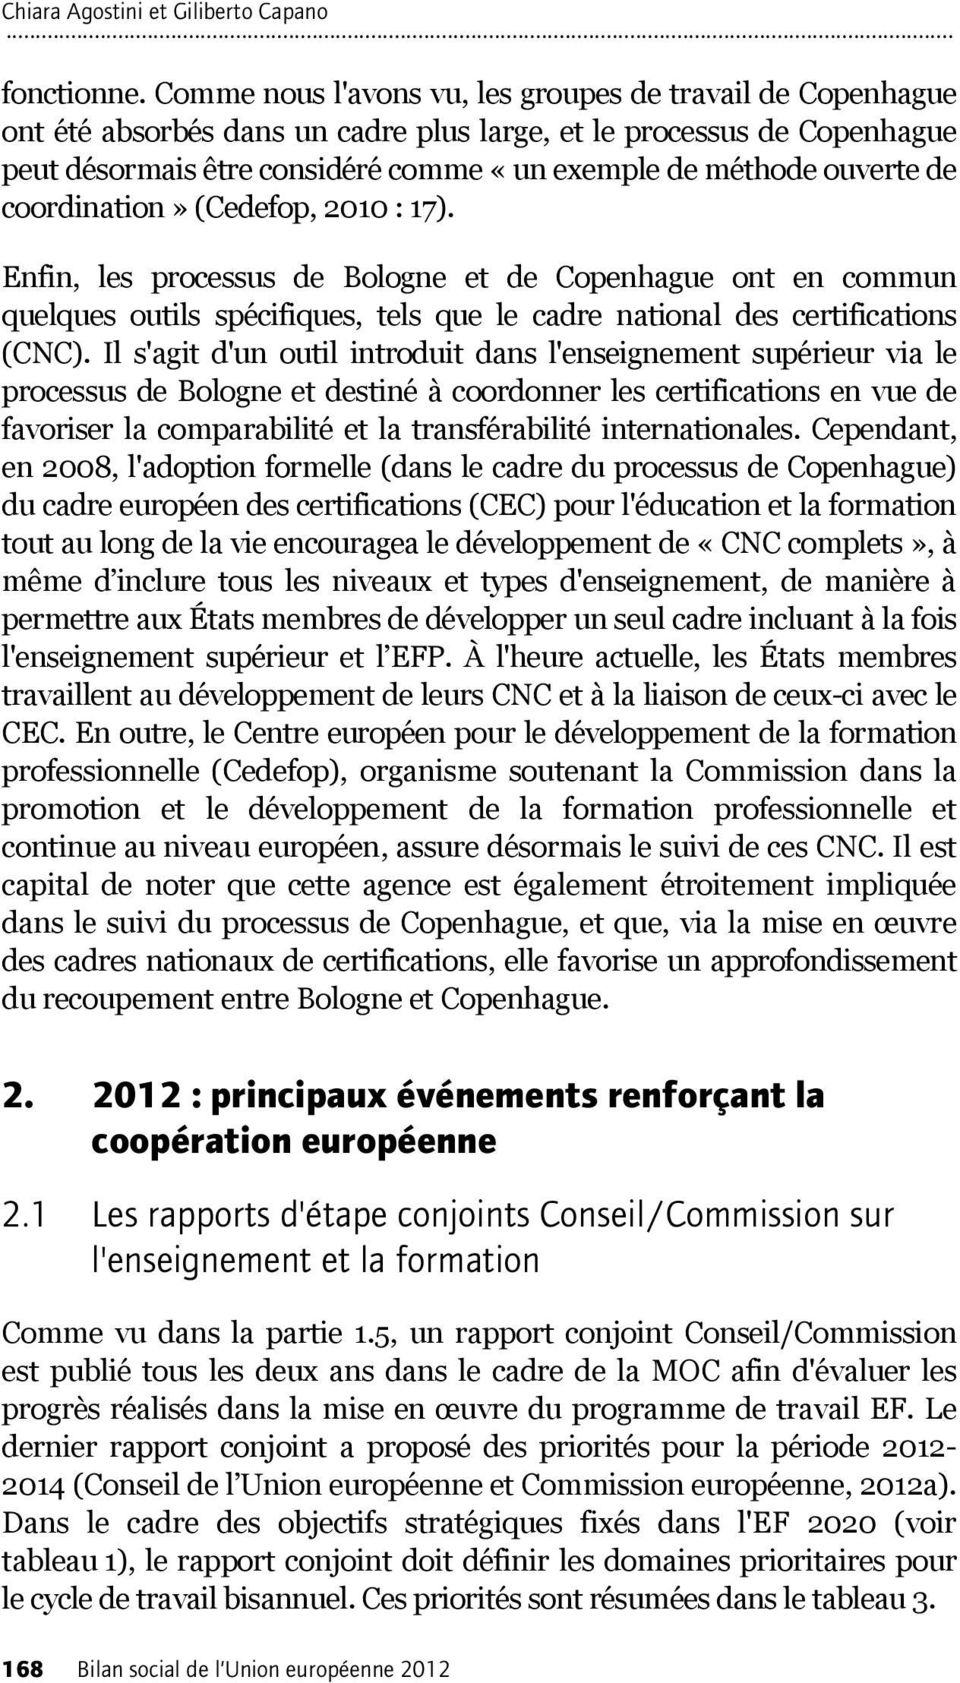 de coordination» (Cedefop, 2010 : 17). Enfin, les processus de Bologne et de Copenhague ont en commun quelques outils spécifiques, tels que le cadre national des certifications (CNC).